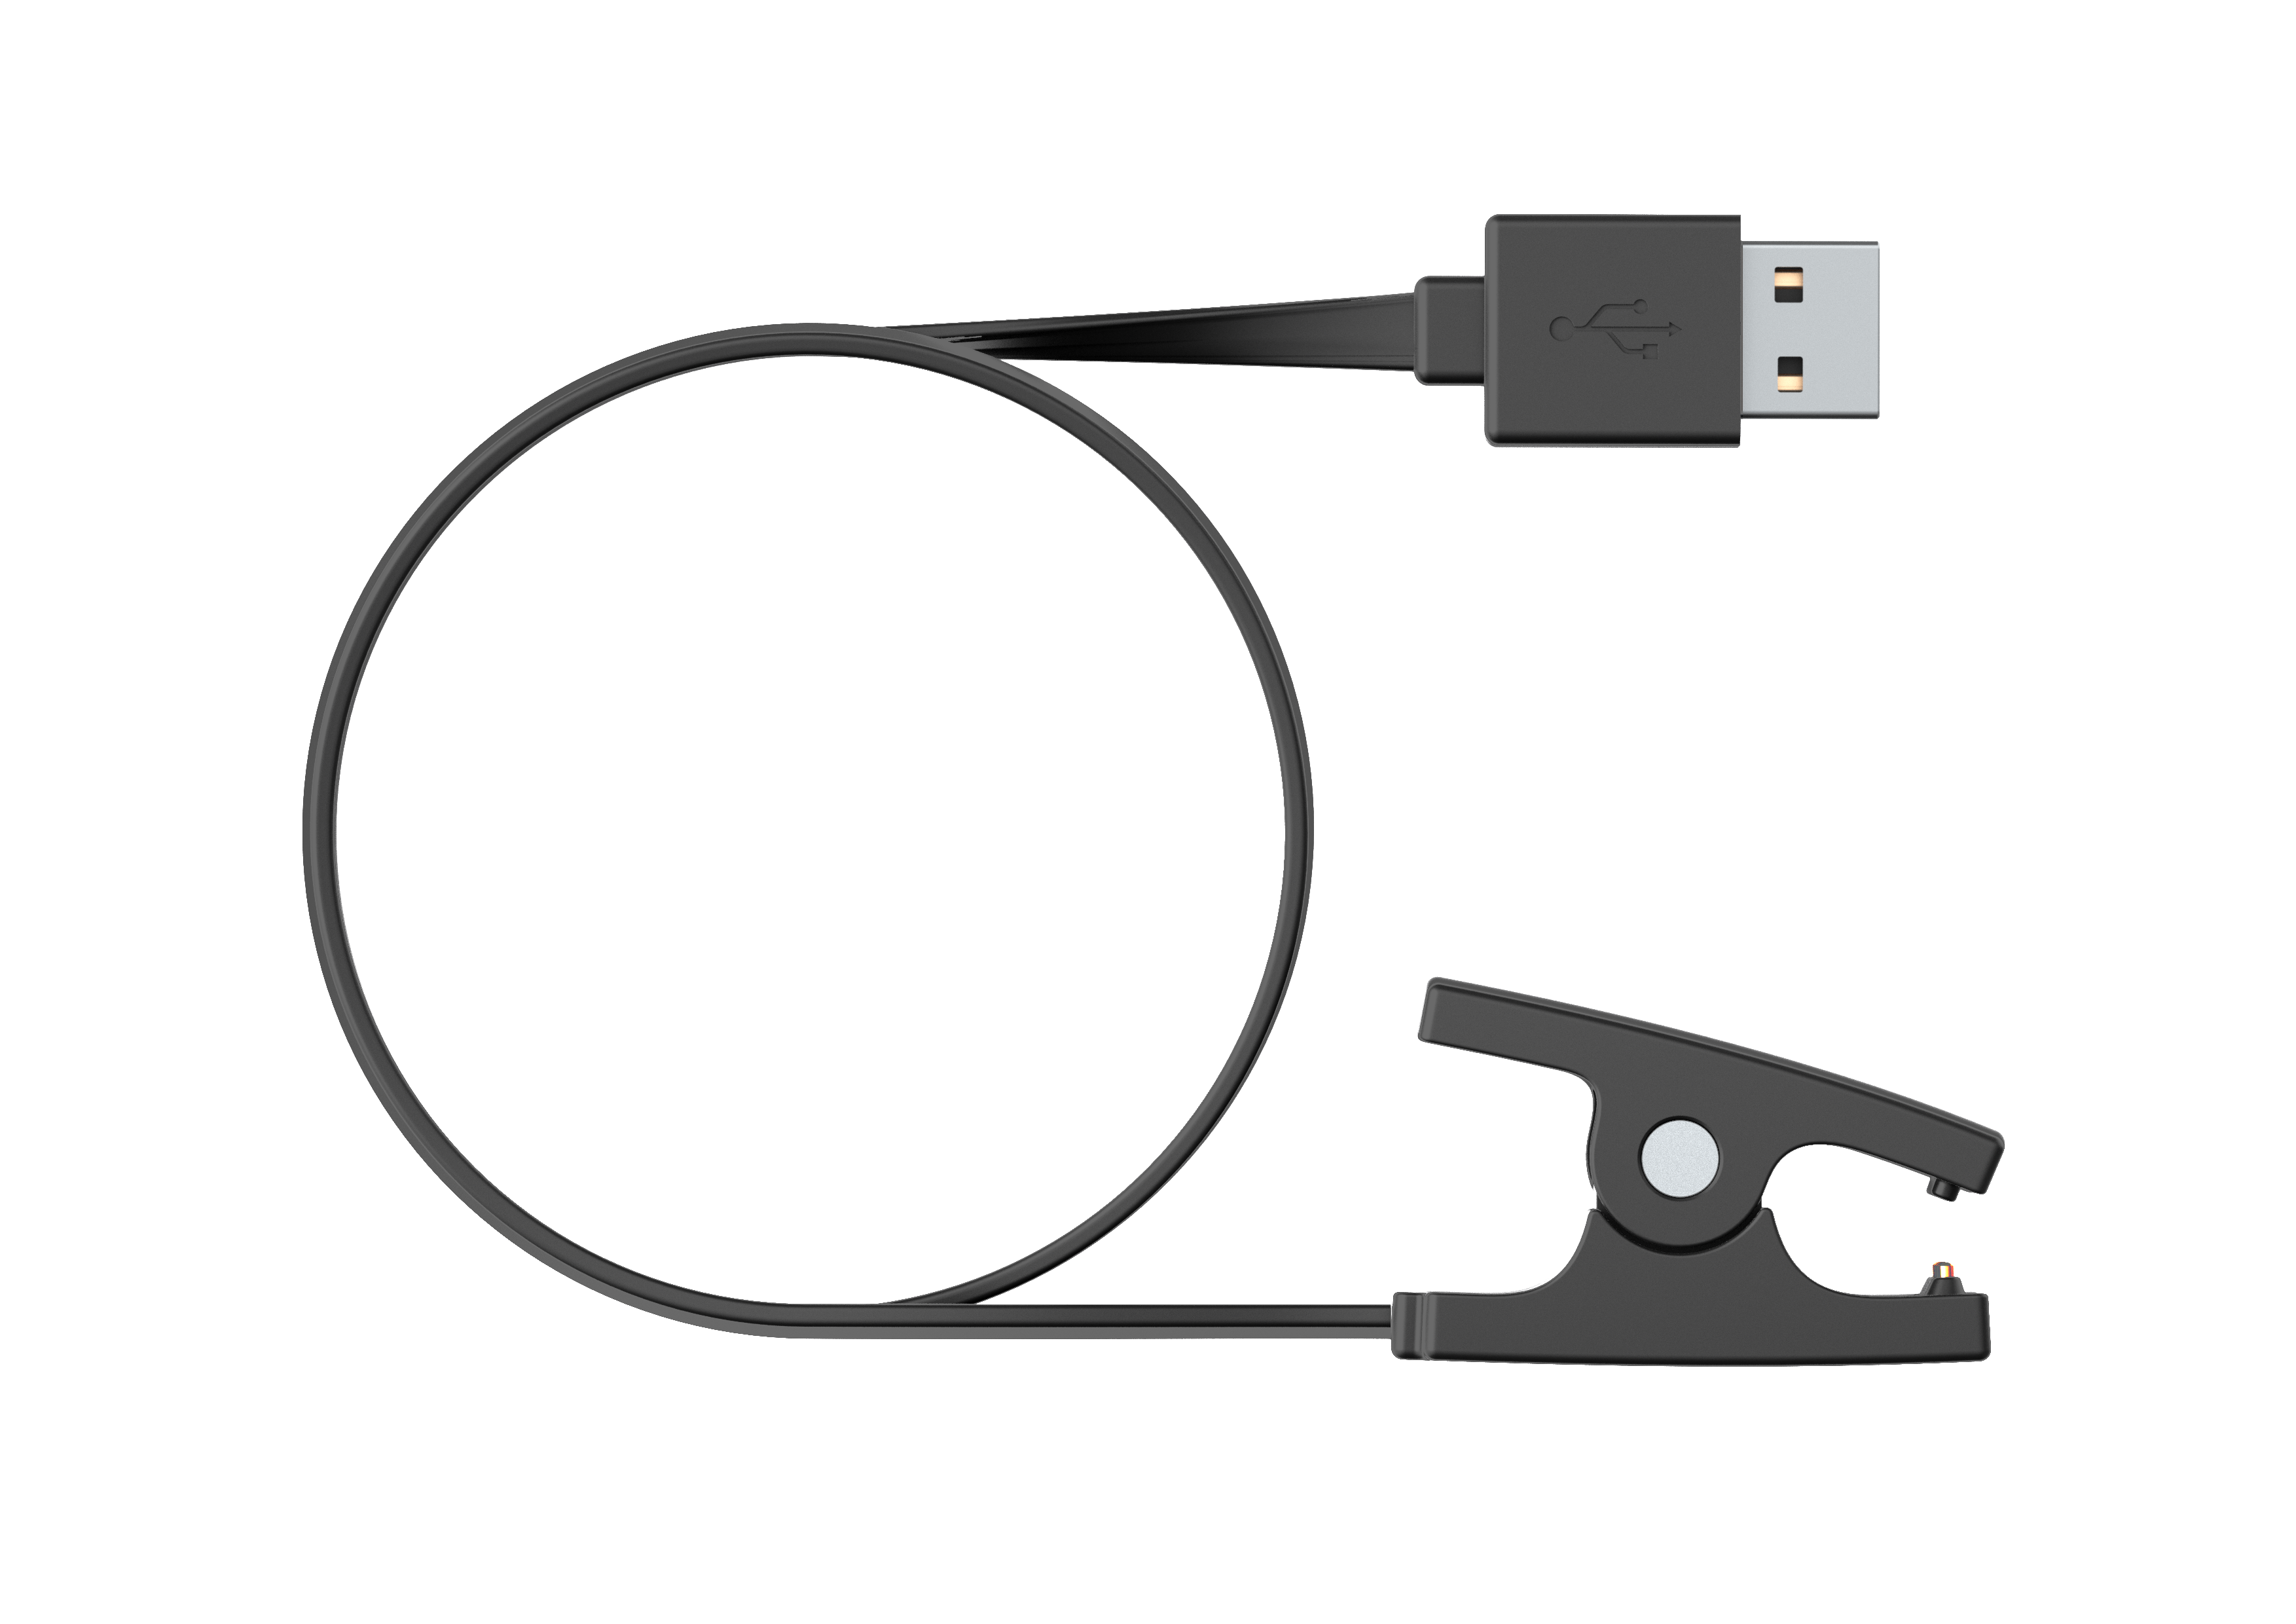 USBケーブル – Suuntoウォッチ専用充電・データ転送用ケーブル